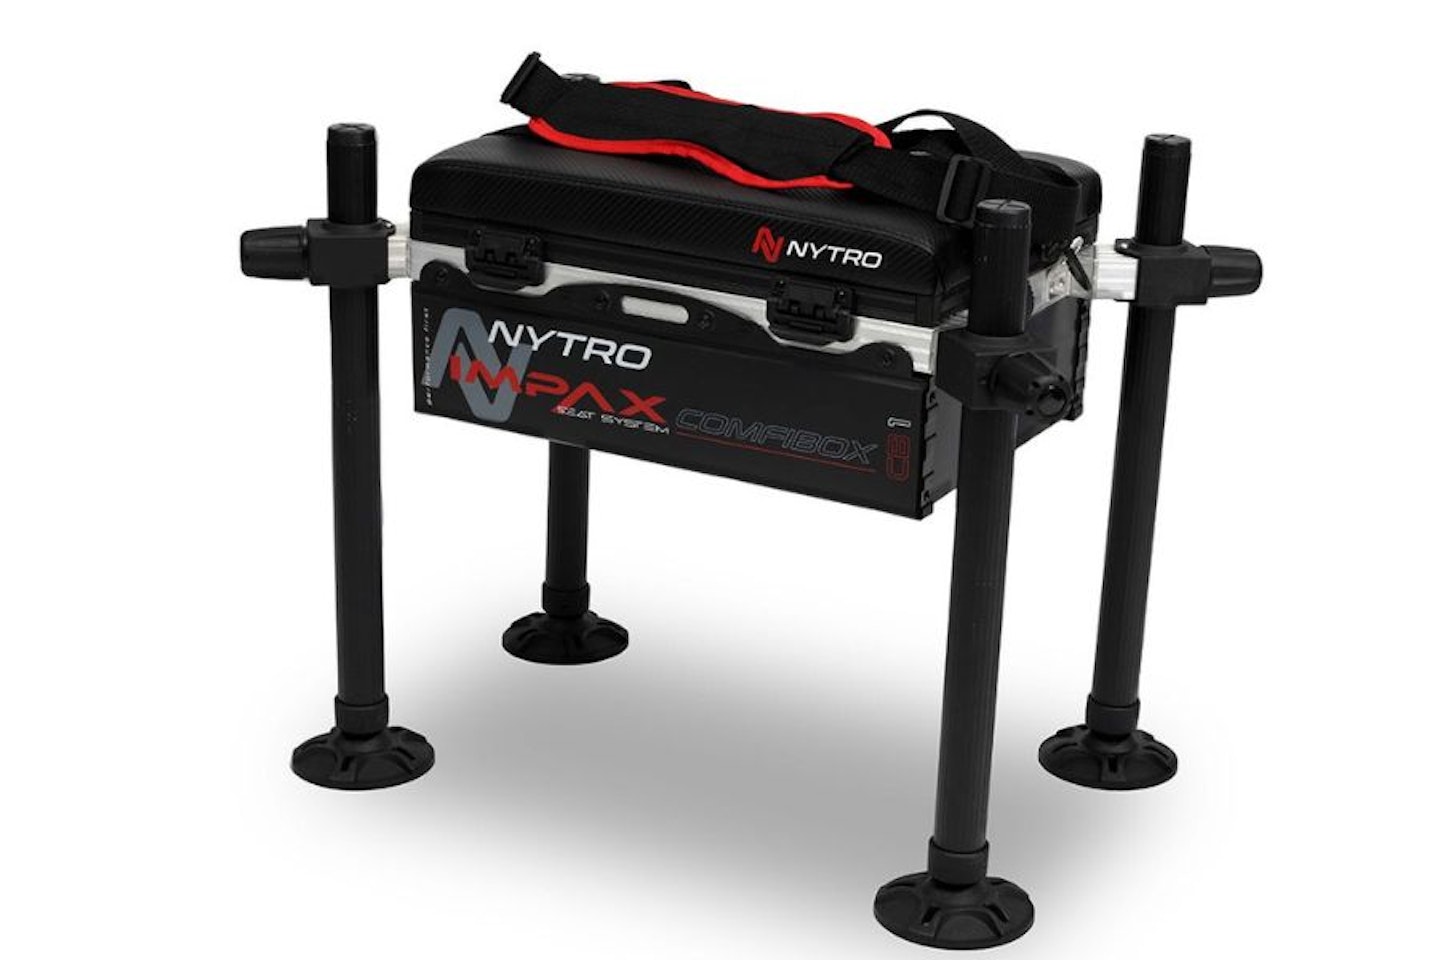 Nytro Impax Comfibox System